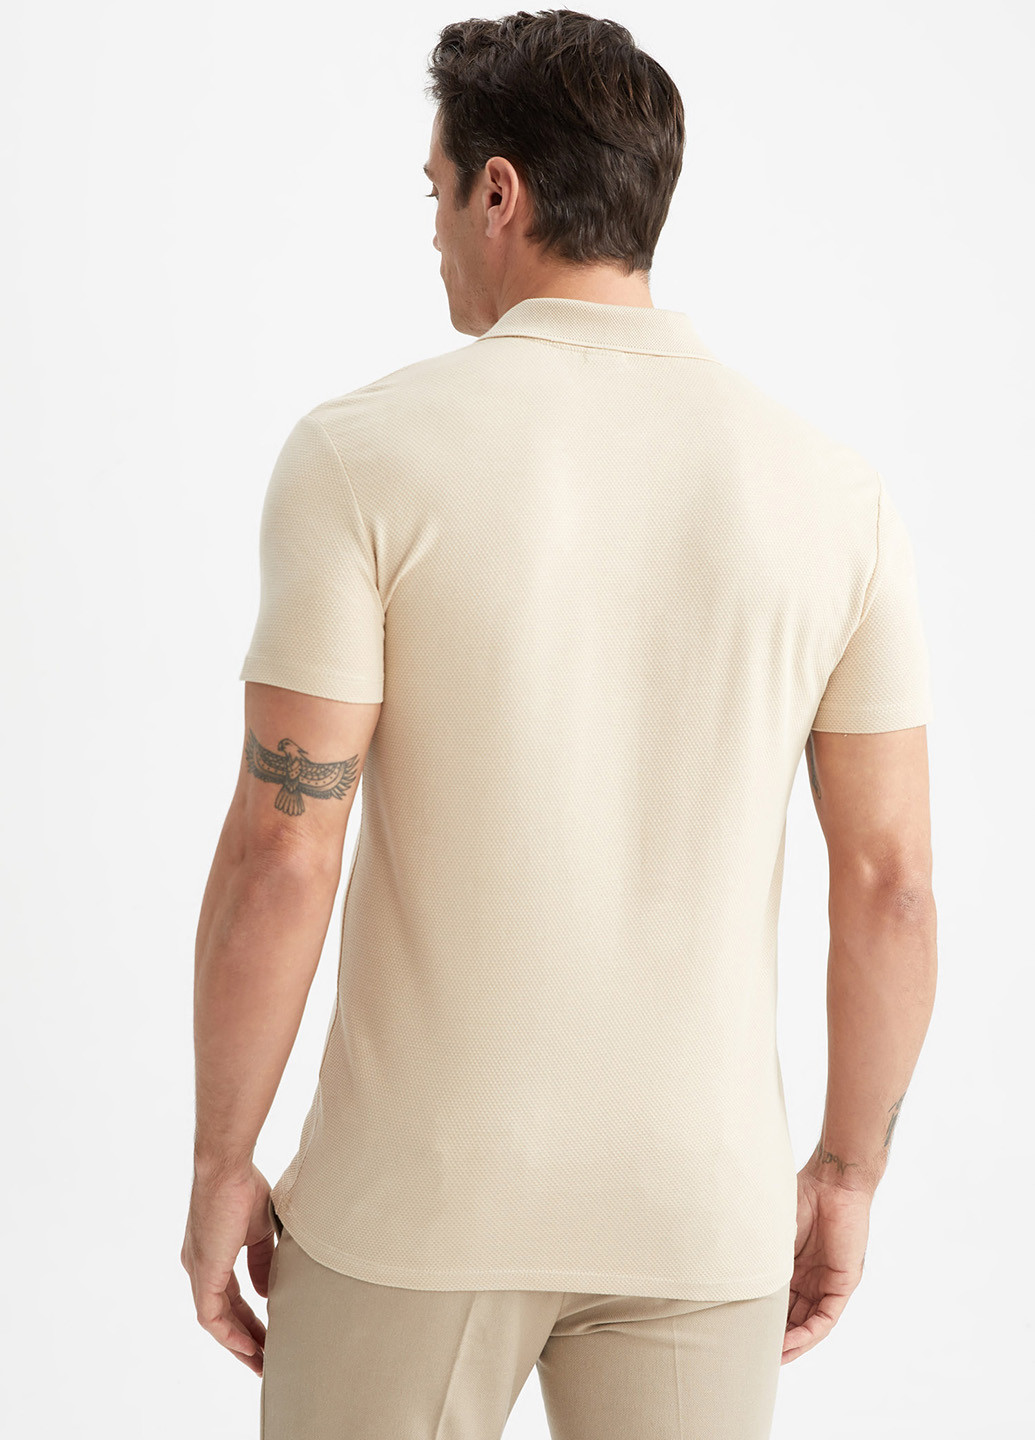 Бежевая футболка-поло для мужчин DeFacto однотонная